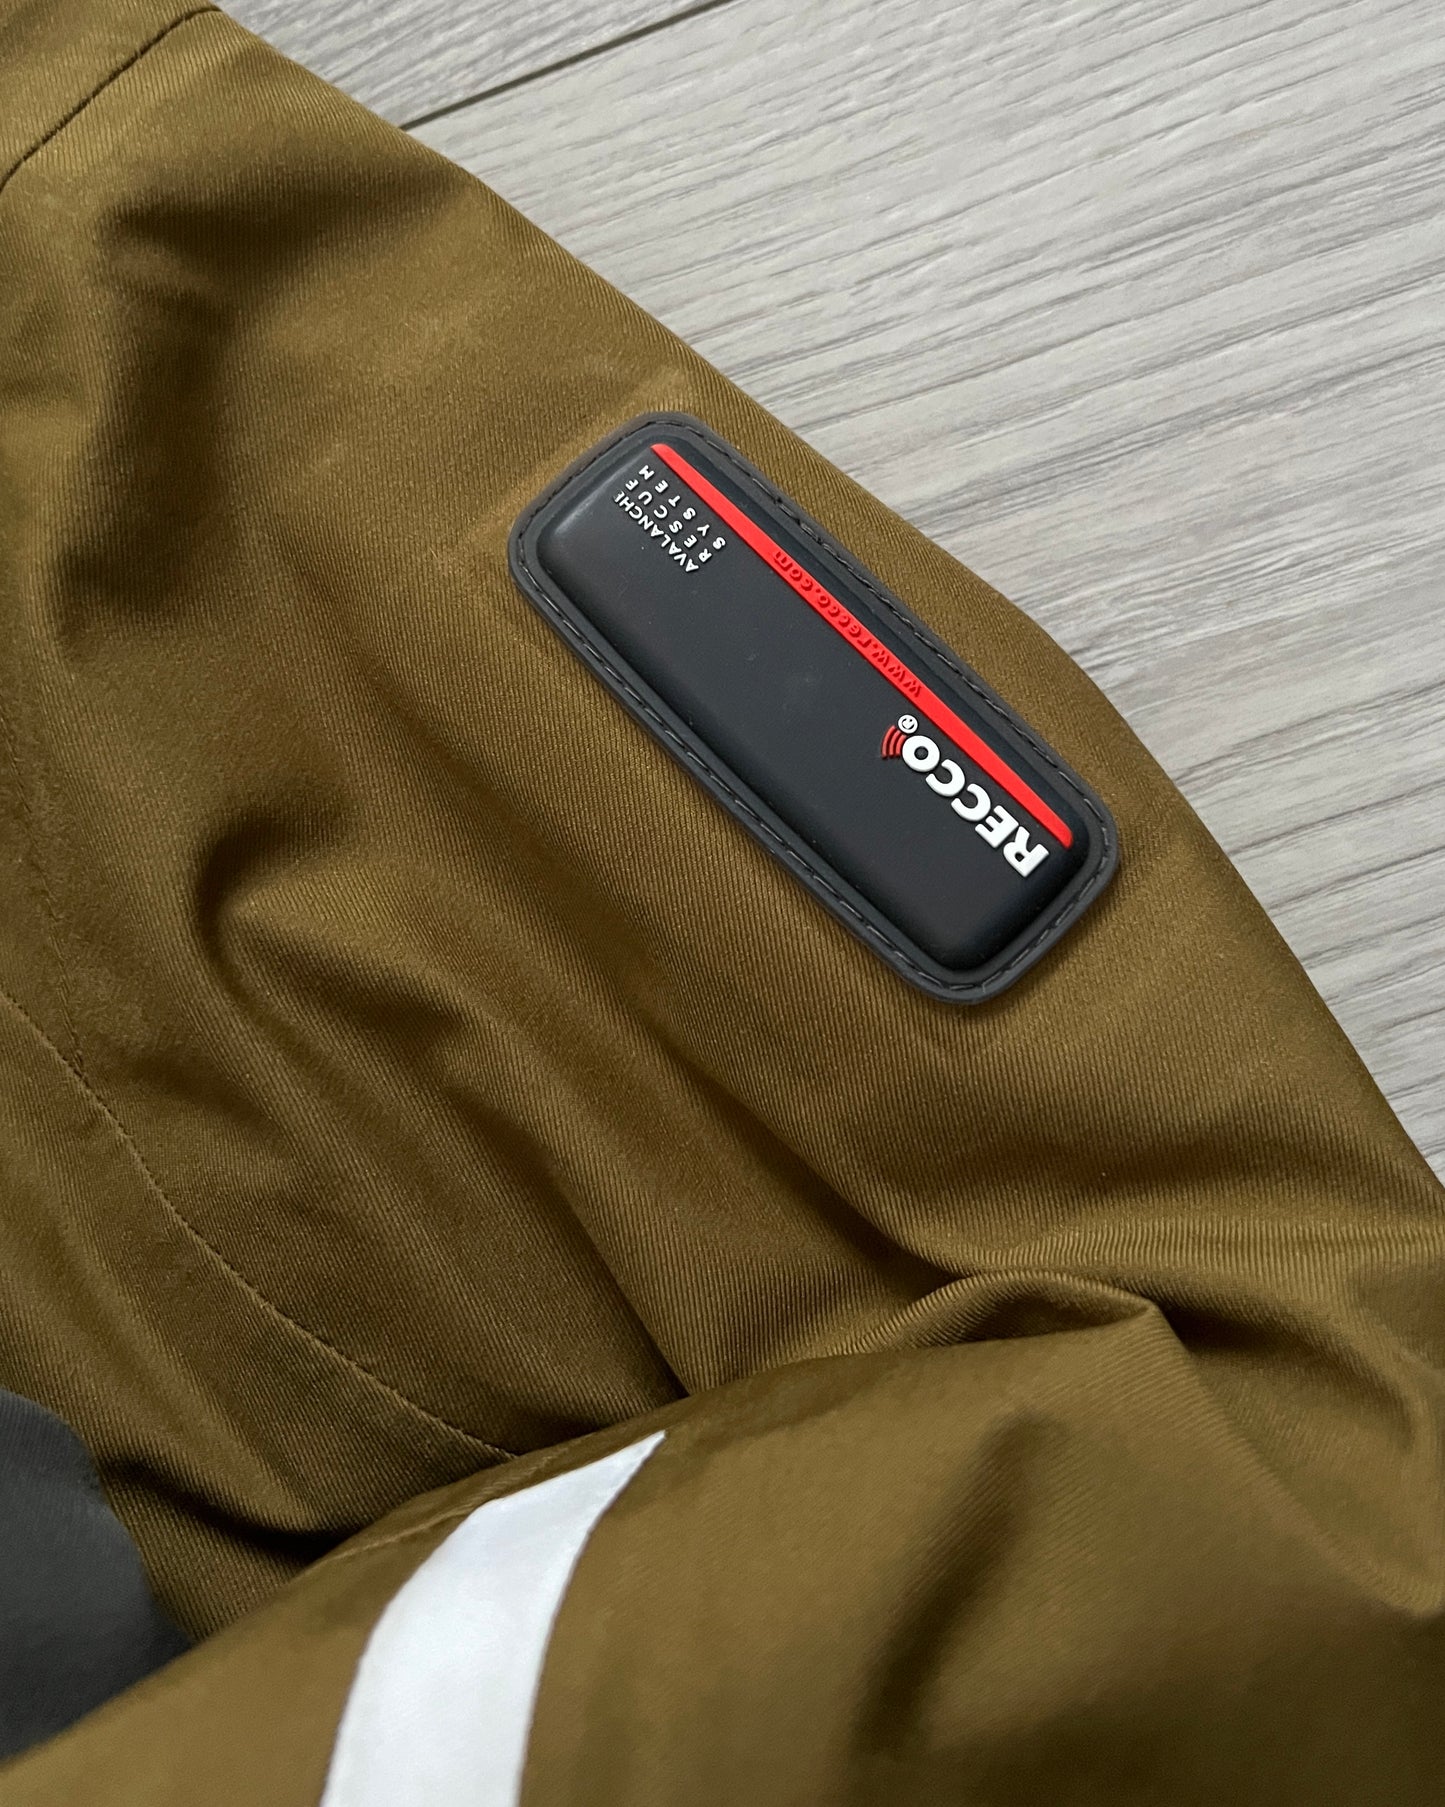 Salomon 00s Advantex Move Recco Technical Insulated Jacket - Size M